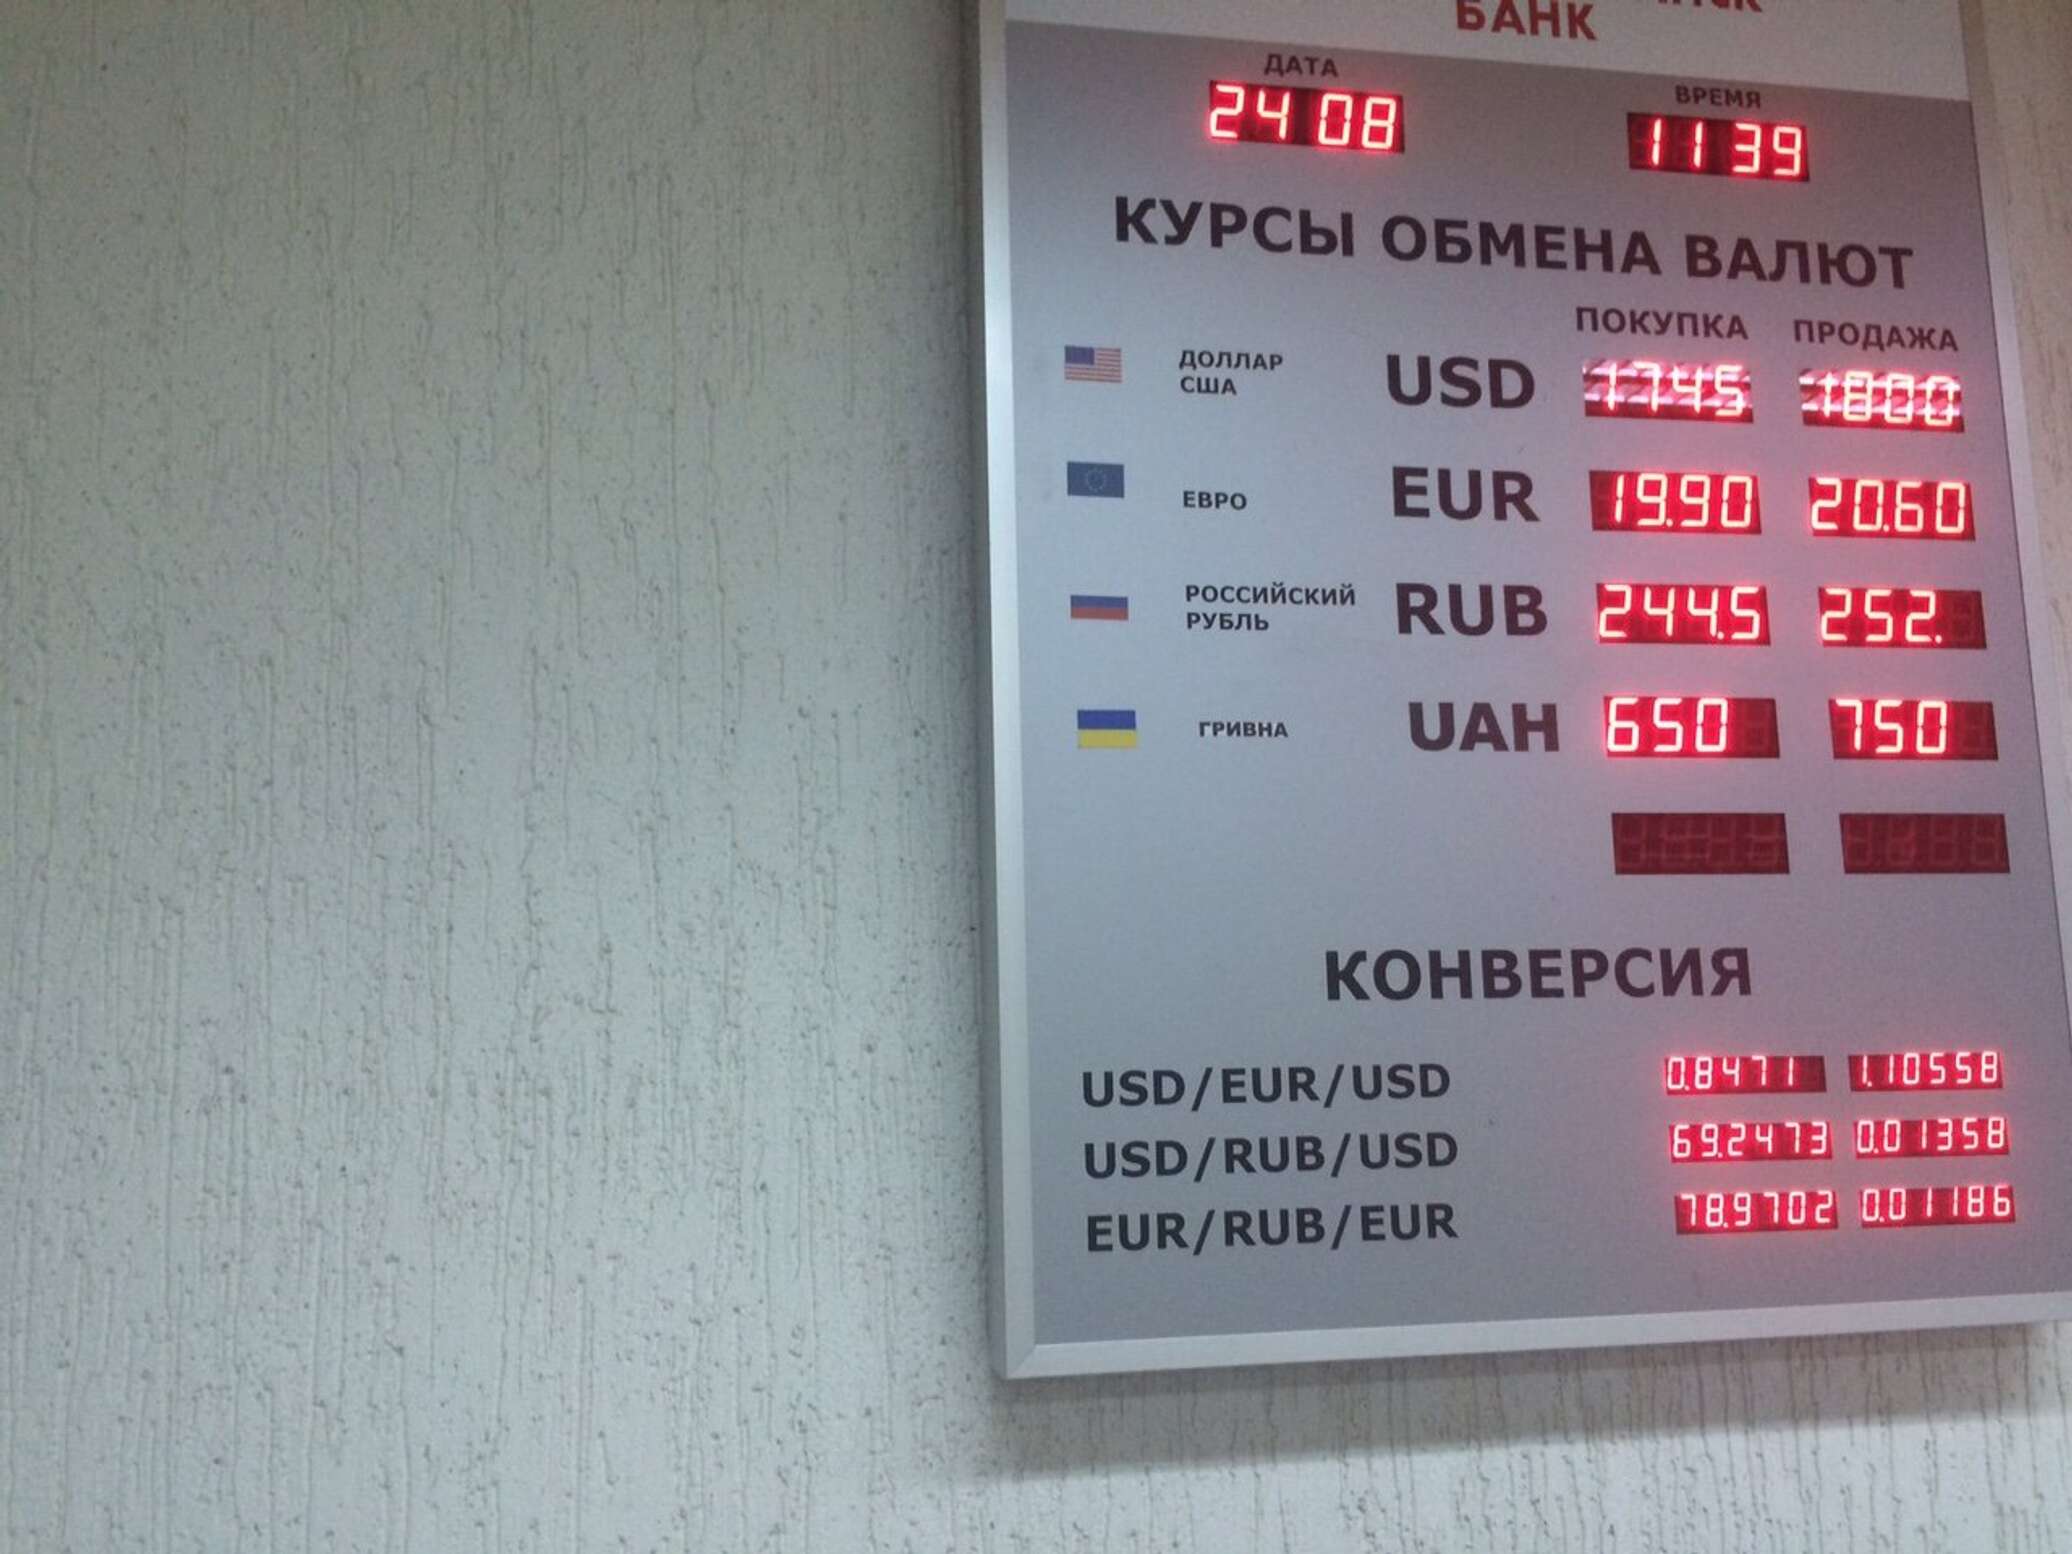 Доллар в белорусских банках. Купля продажа валюты. Курсы валют в рублях. Курс валют Нацбанка. Курсы валюты Нацбанка Беларусь.